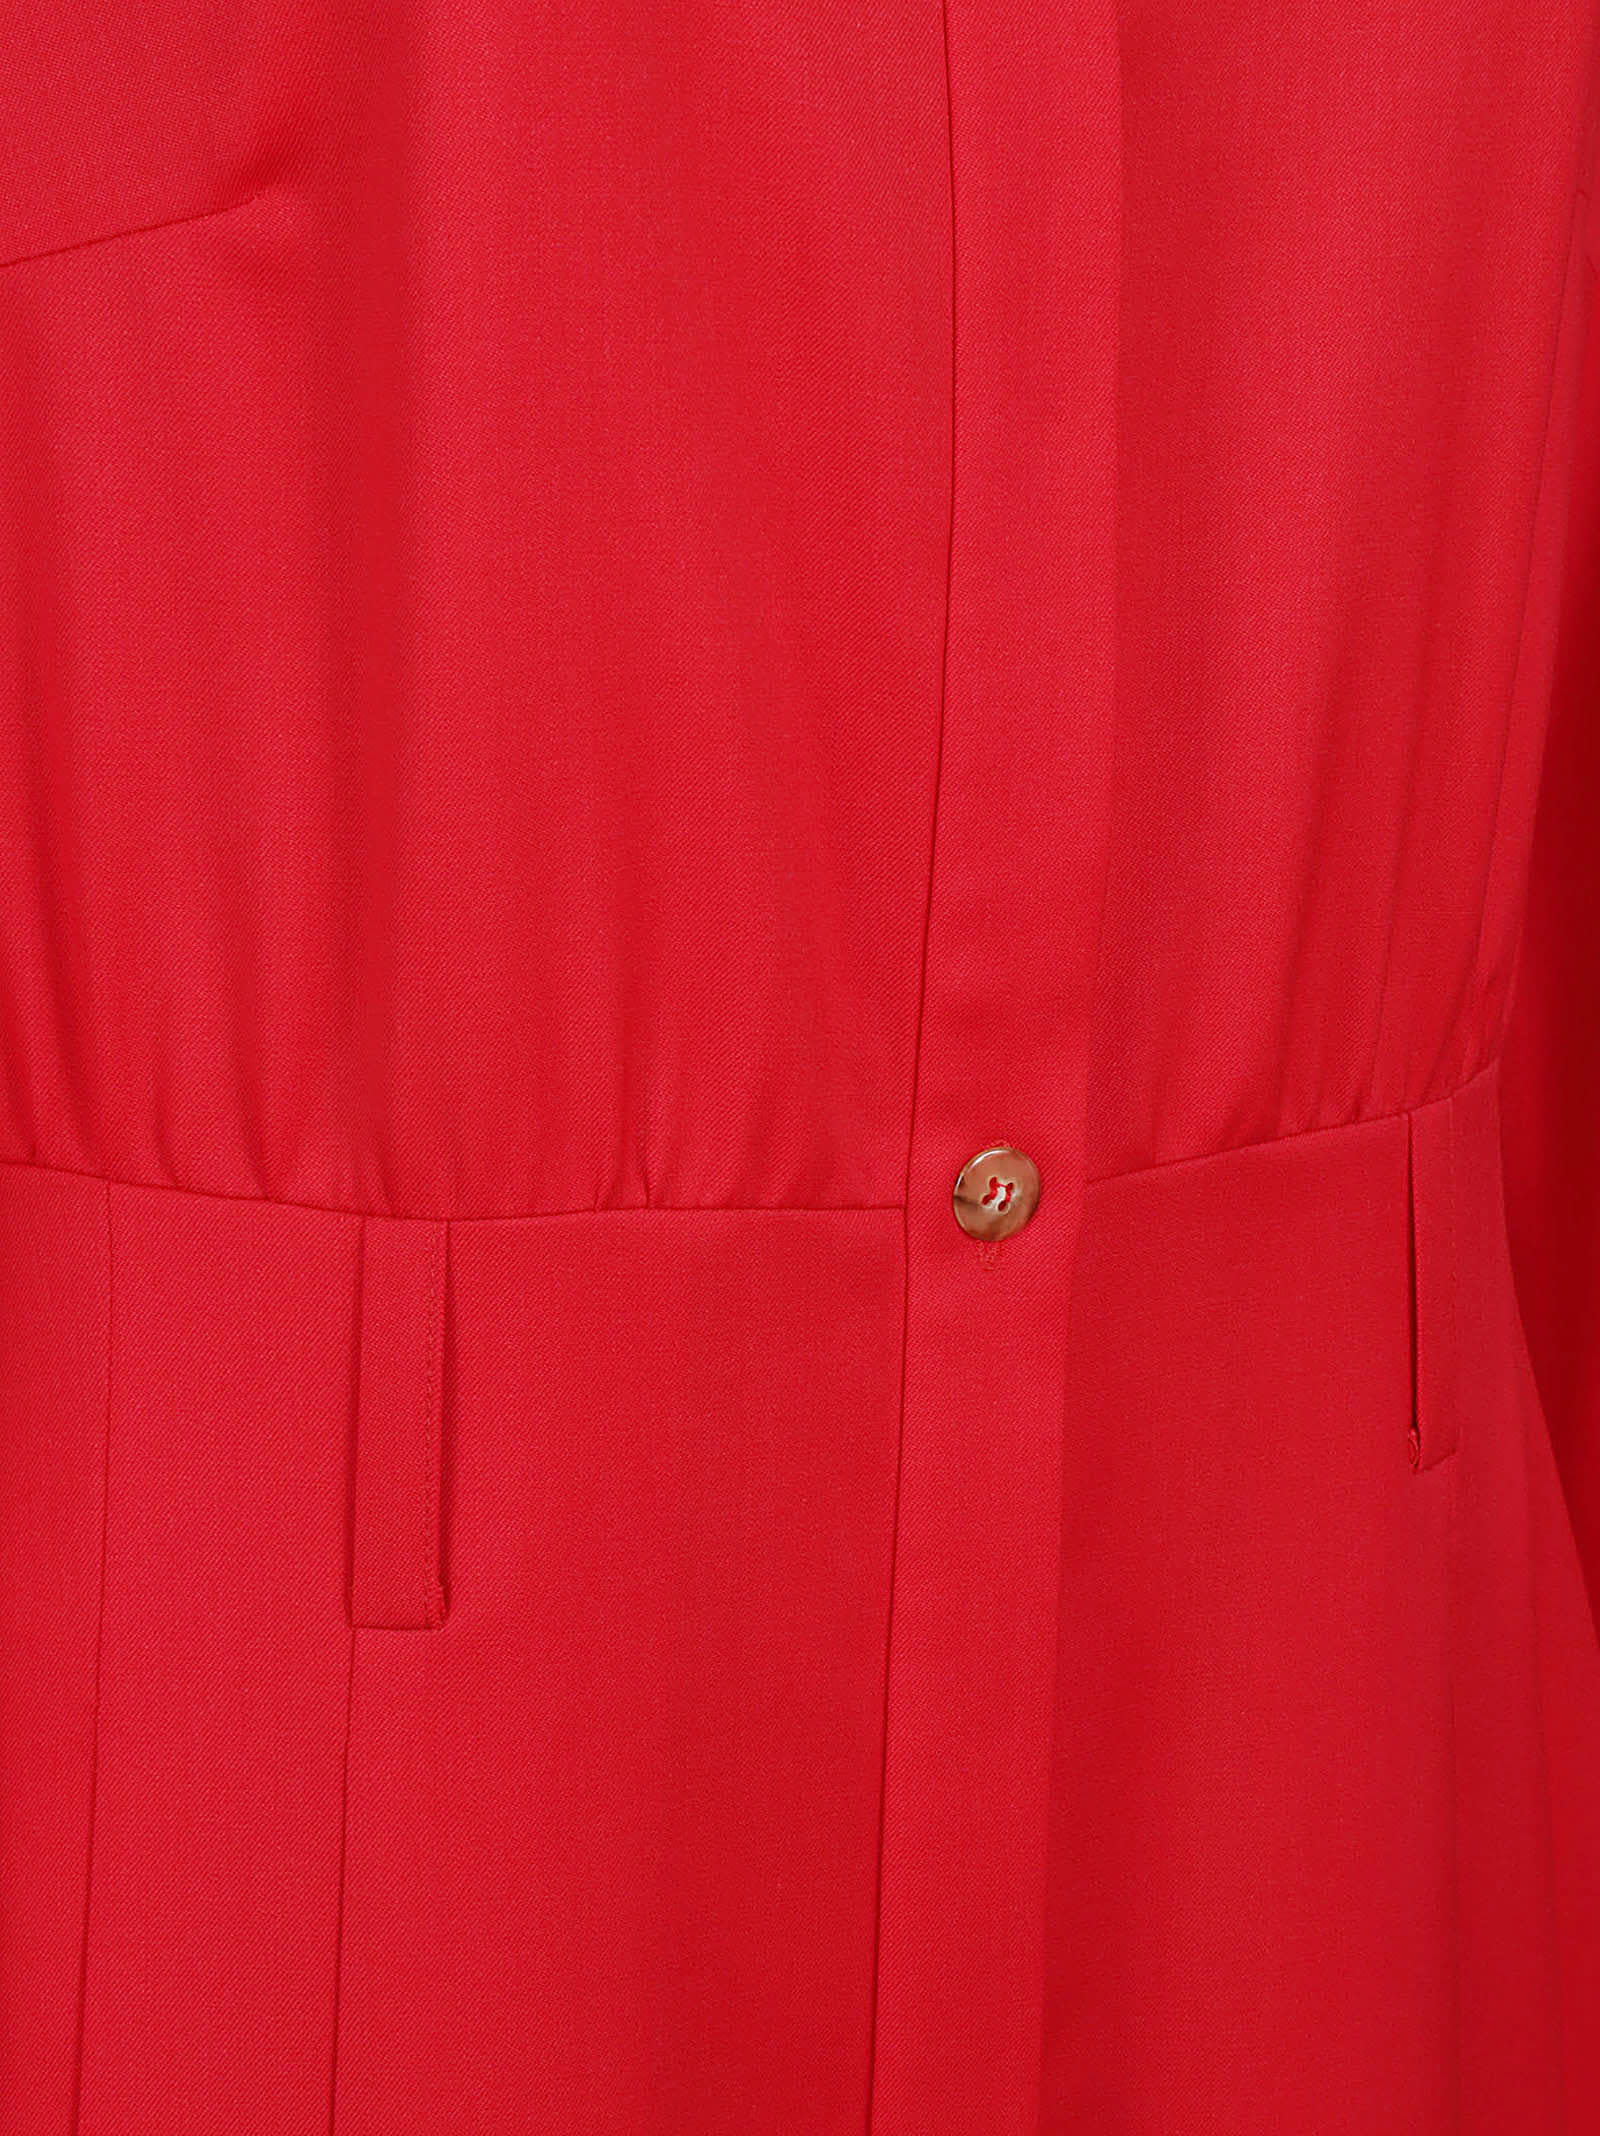 Shop Crida Milano Crida Dresses Red